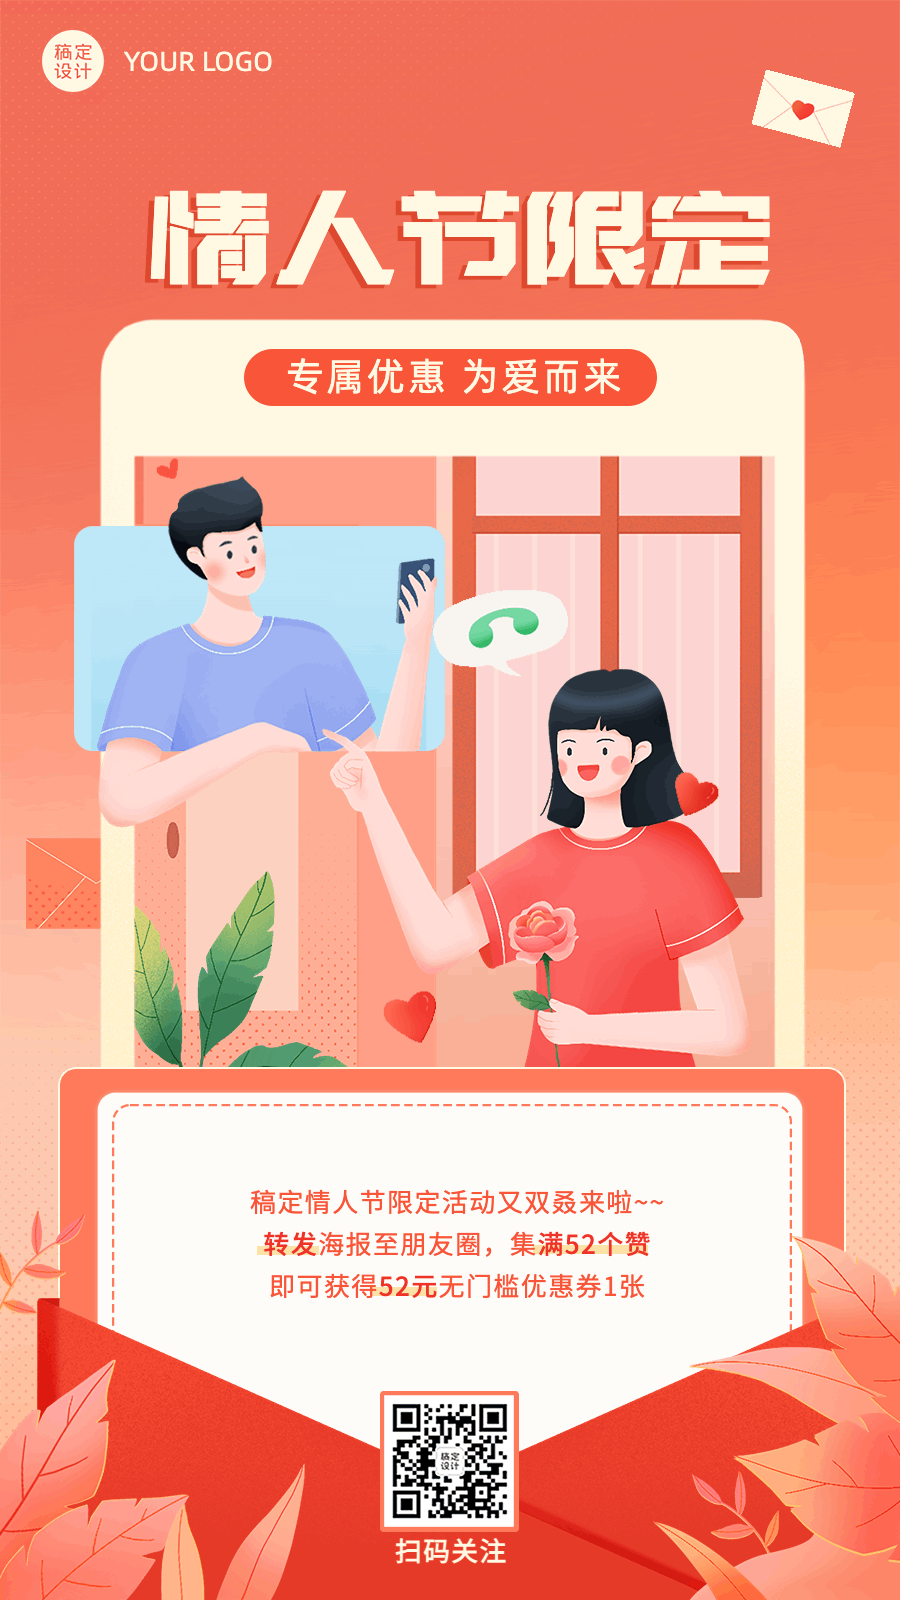 七夕情人节限定告白活动插画动态海报